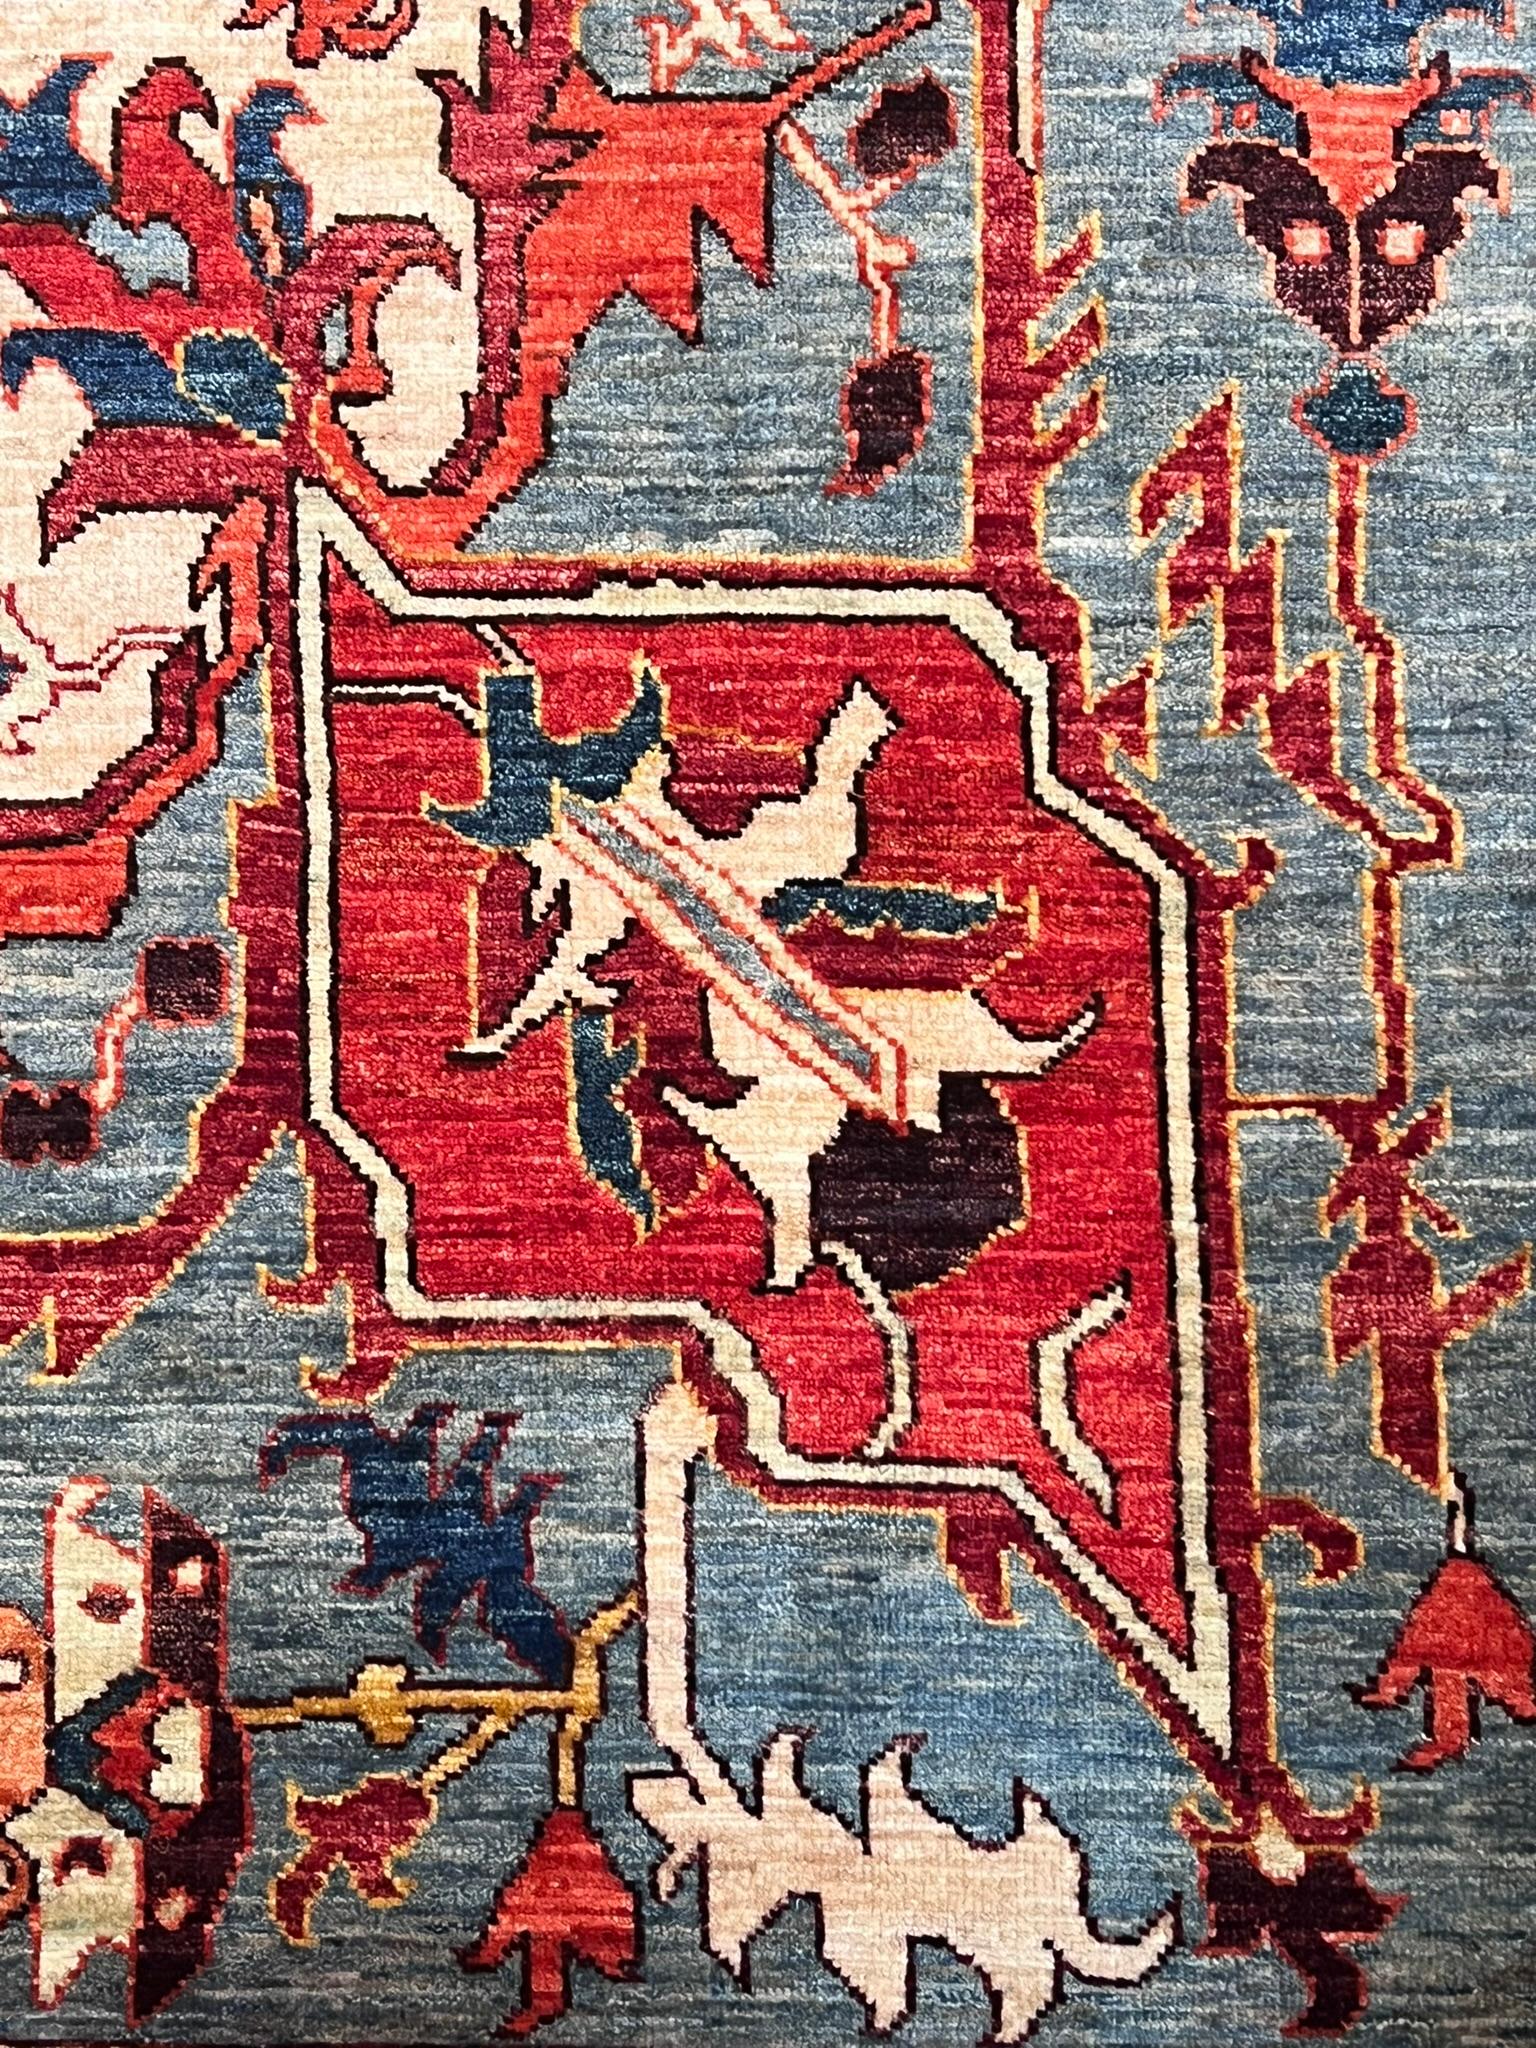 Dieses interessante Artefakt stammt aus dem Panjshir-Tal in Nordafghanistan. Hier werden hochwertige Teppiche mit Mustern hergestellt, die von klassischen persischen Teppichen inspiriert sind. Unser Teppich erinnert insbesondere an die alten